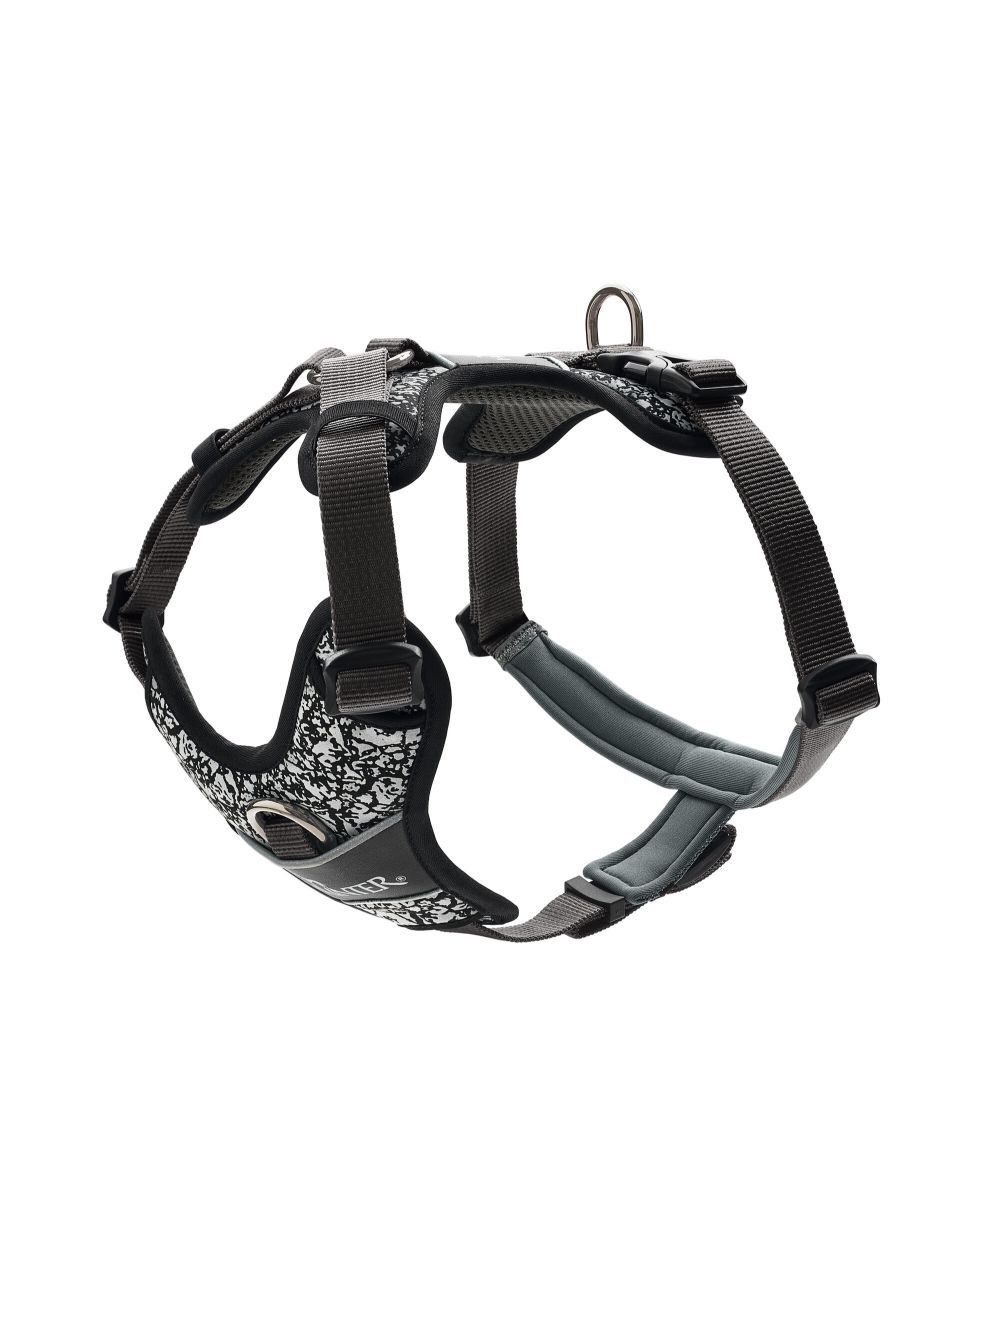 Hunter - Harness Divo Reflect S-M, black/grey - (68960) - Kjæledyr og utstyr